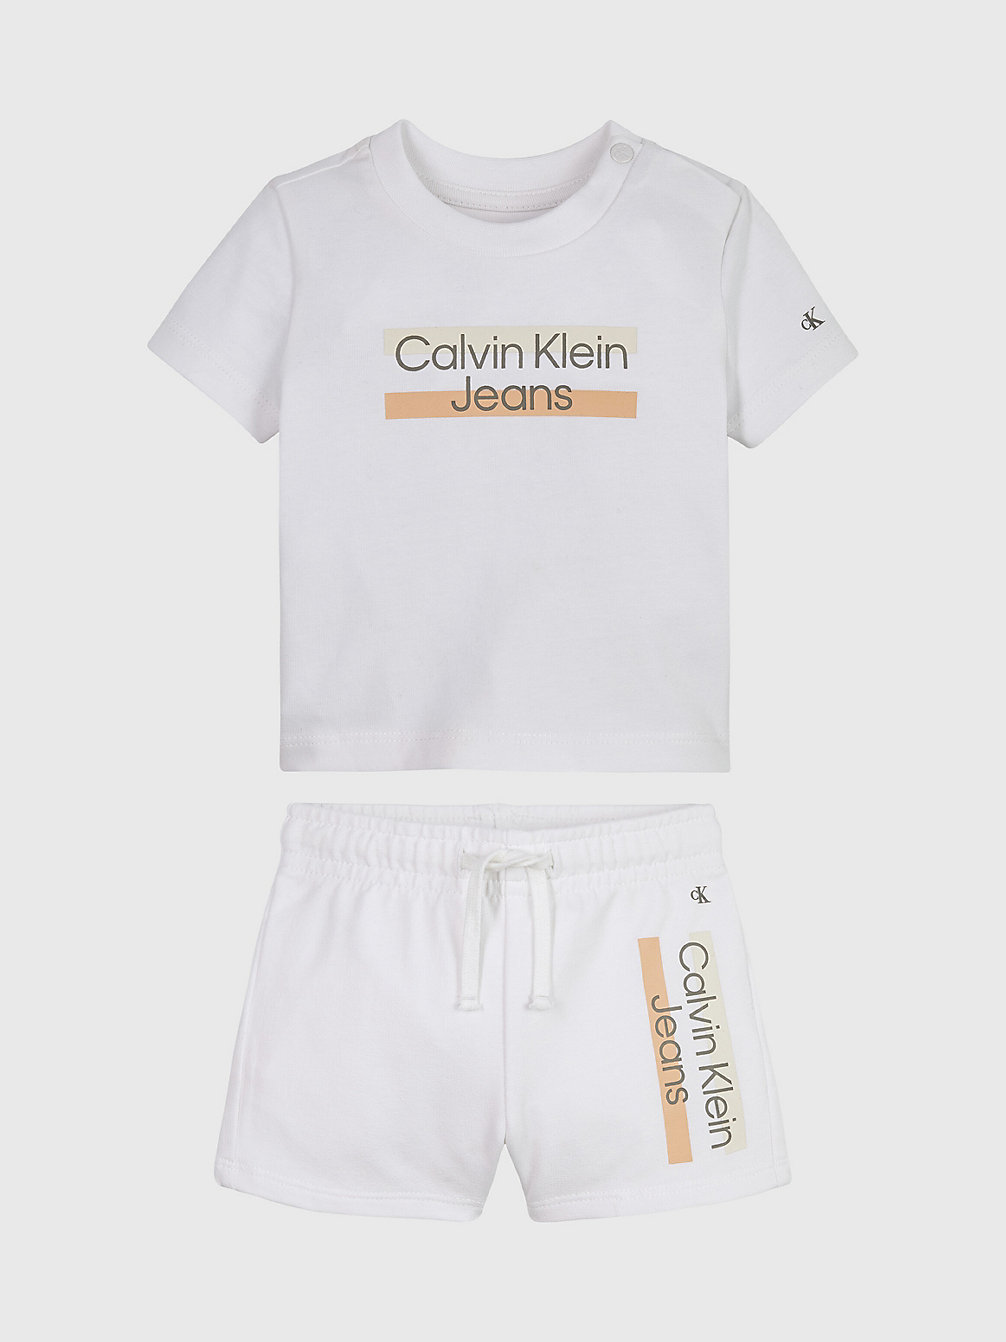 Ensemble T-Shirt Et Short Pour Nouveau-Né > BRIGHT WHITE > undefined newborn > Calvin Klein